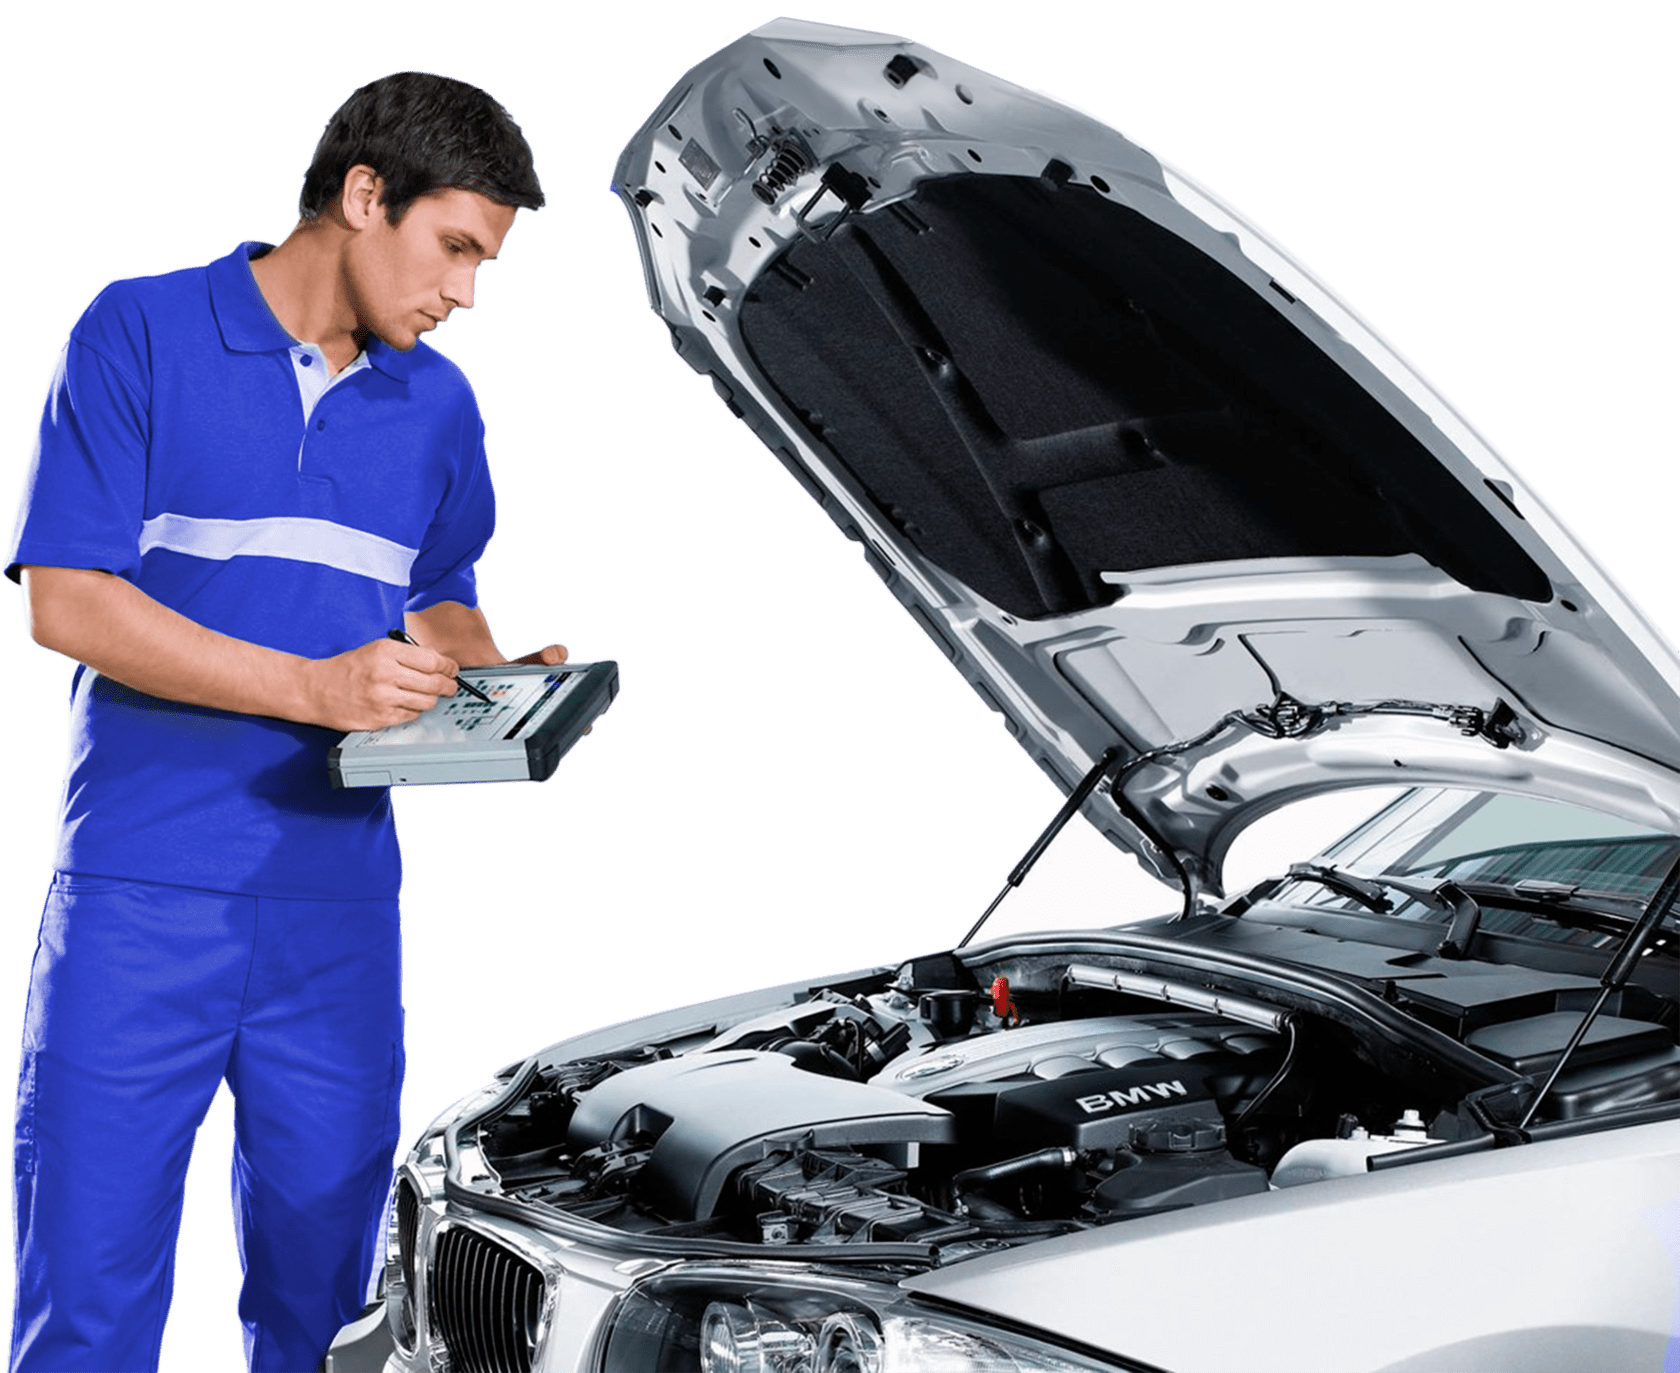 Оборудование, приборы и инструменты, применяемые для диагностирования и ремонта легковых автомобилей